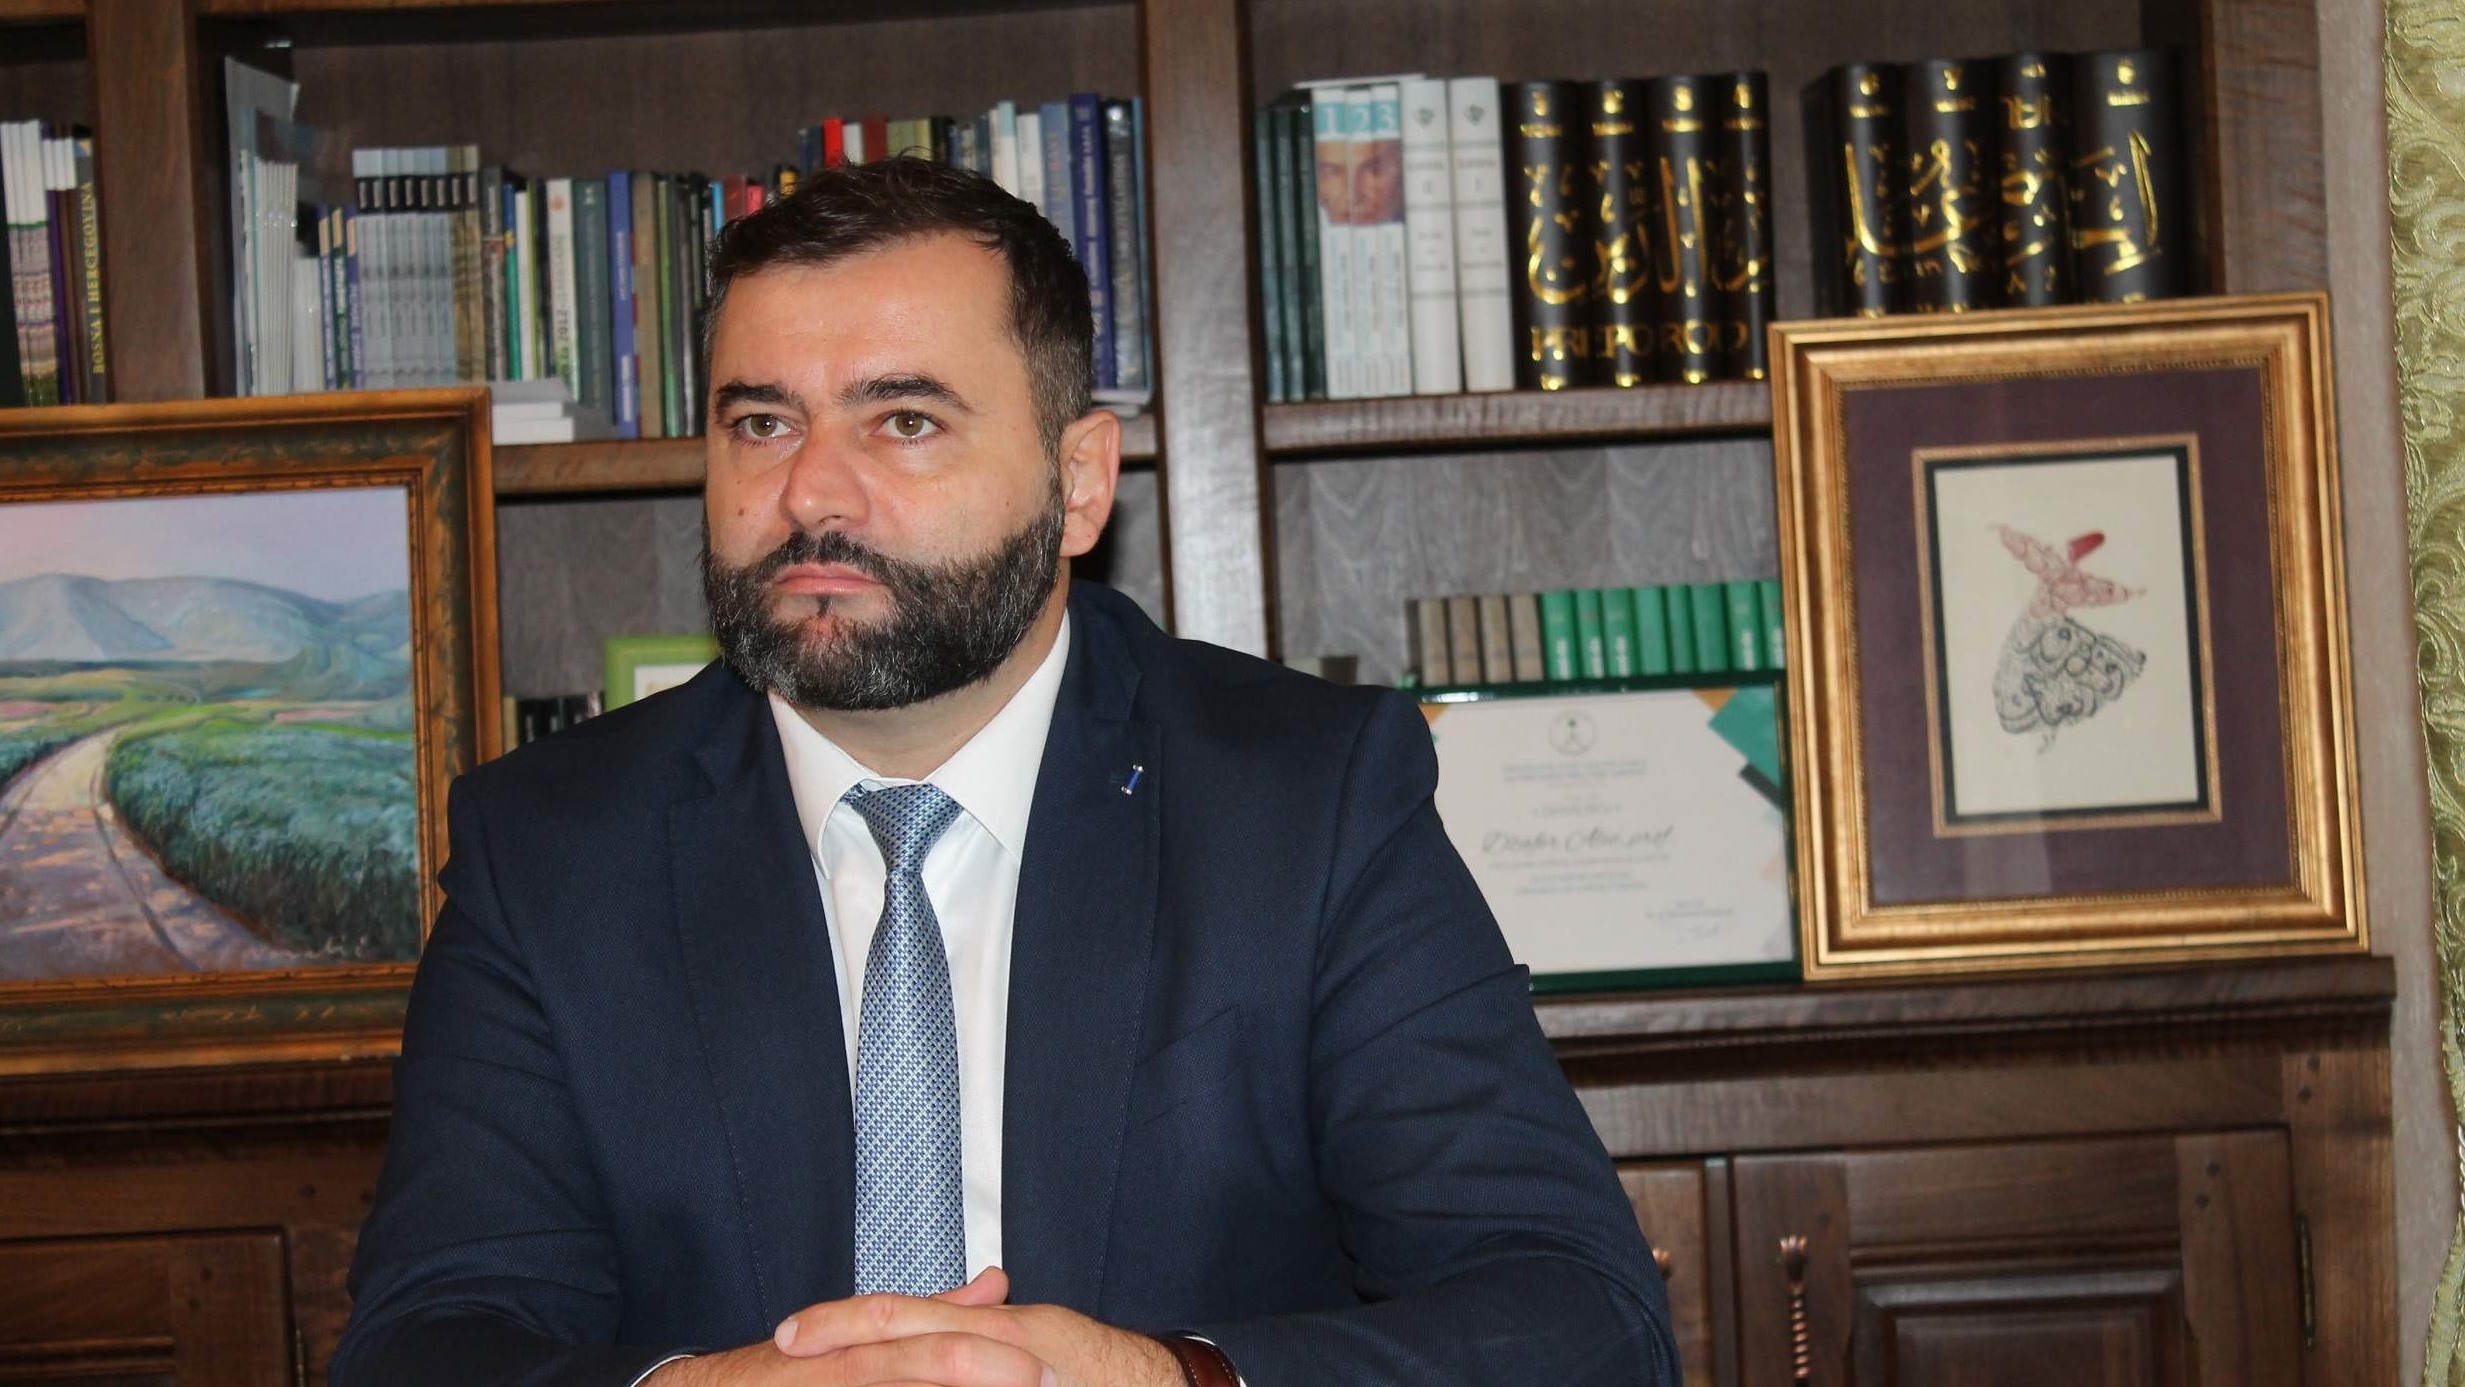 Odluka dr. Milivojevića da podrži HDZ-ovh kandidata odrazit će se na buduće procese multietničkog i otvorenog Mostara